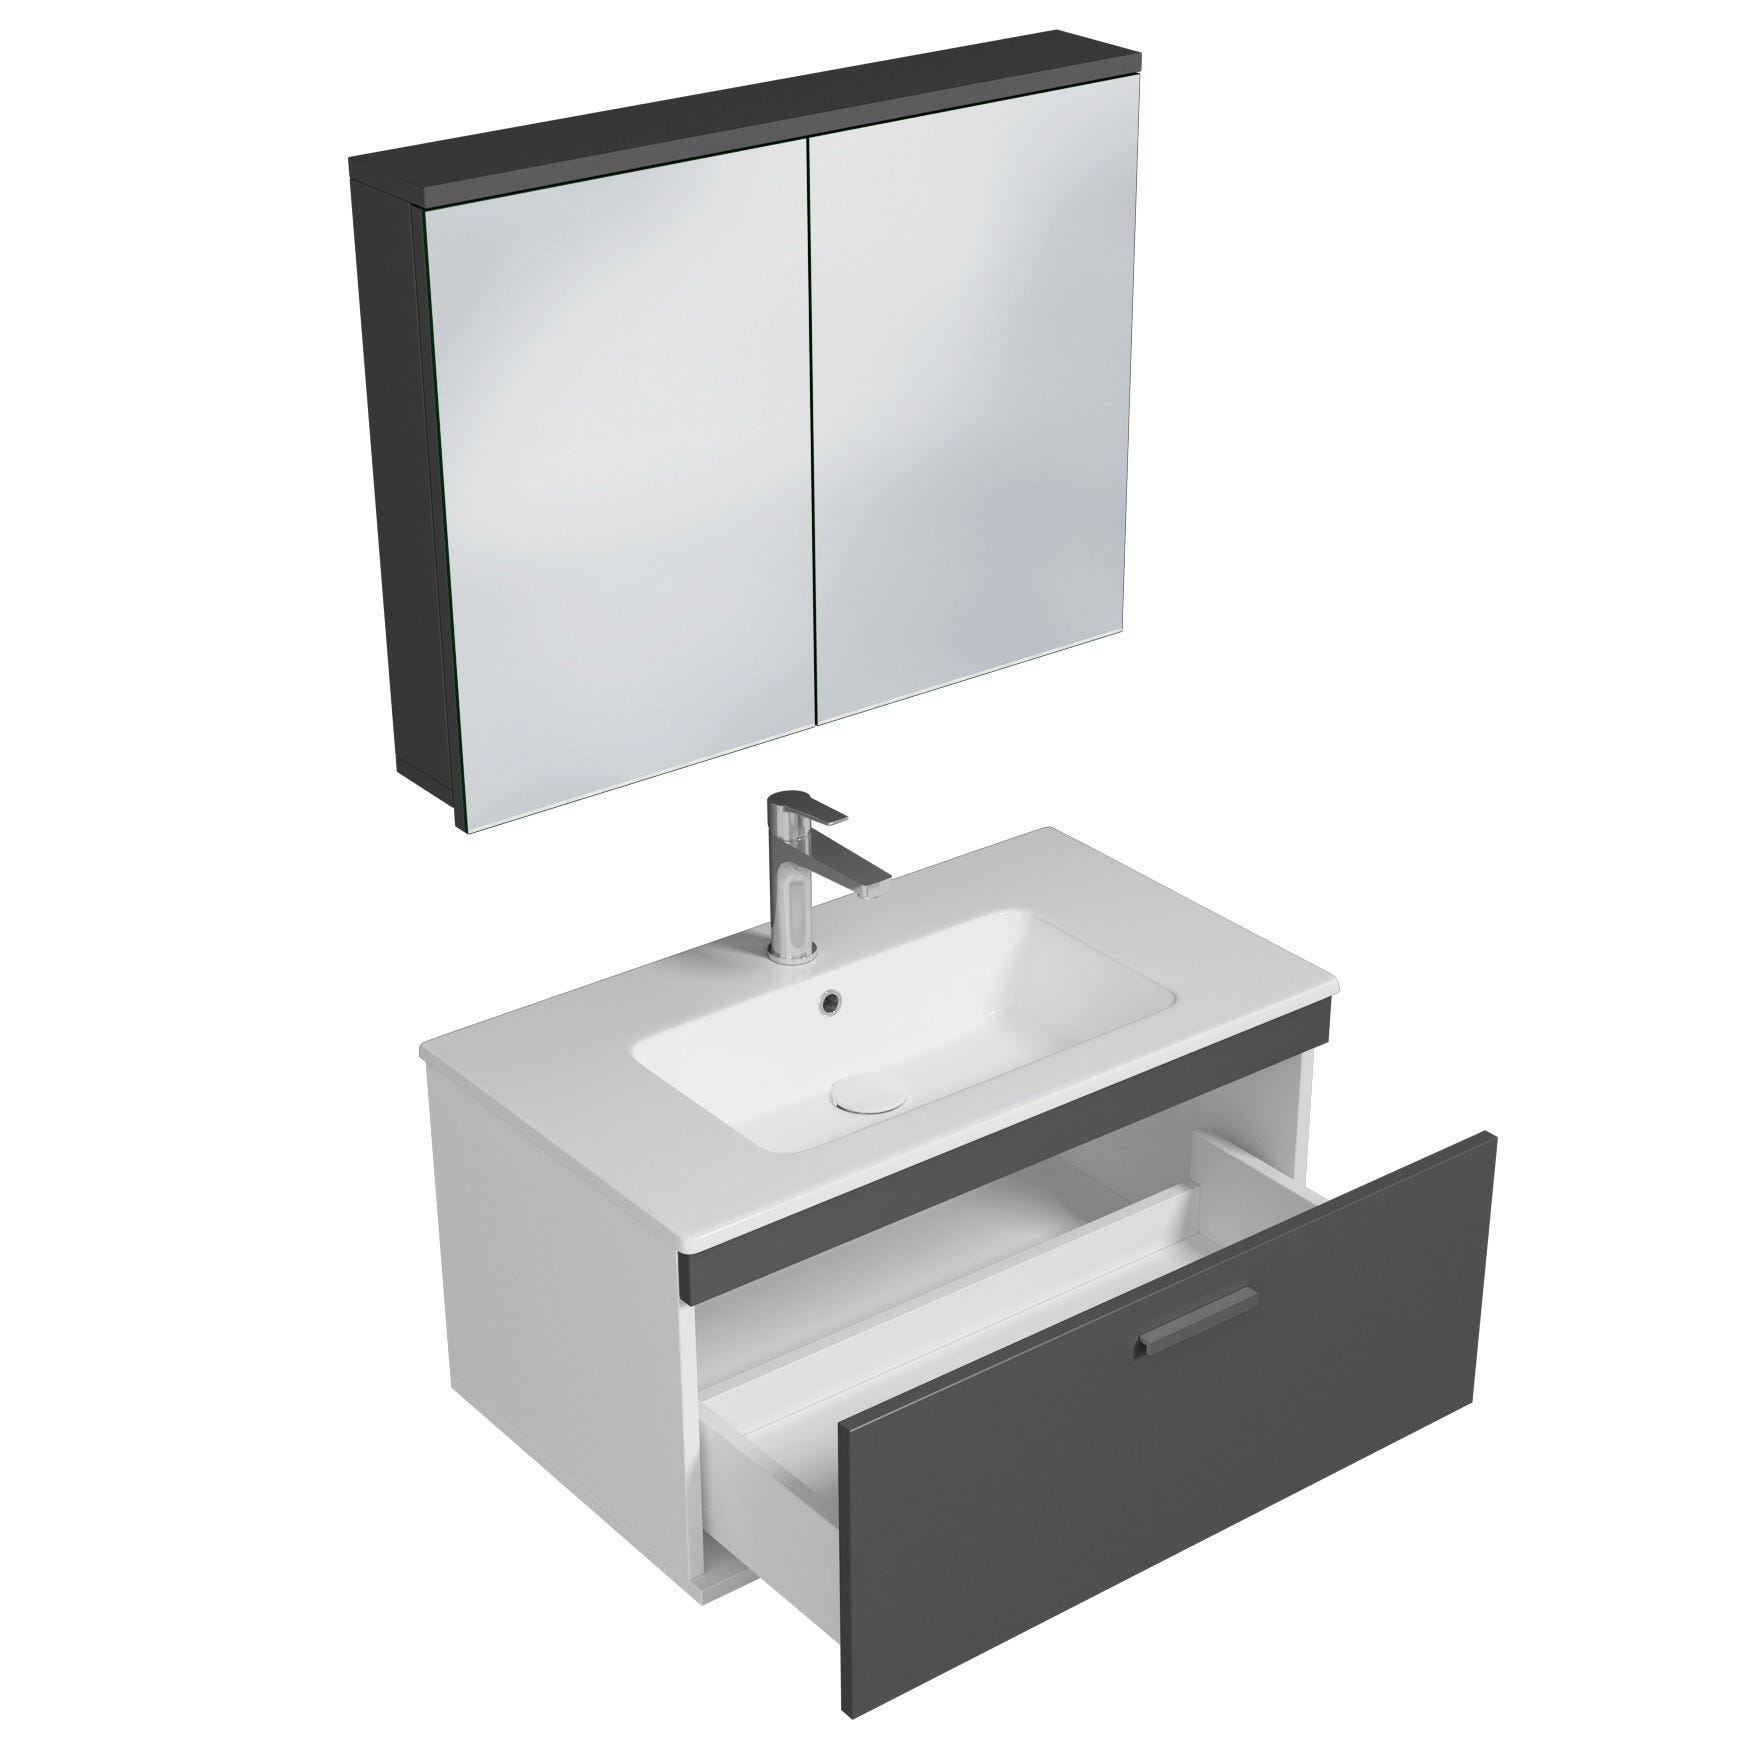 RUBITE Meuble salle de bain simple vasque 1 tiroir gris anthracite largeur 80 cm + miroir armoire 1